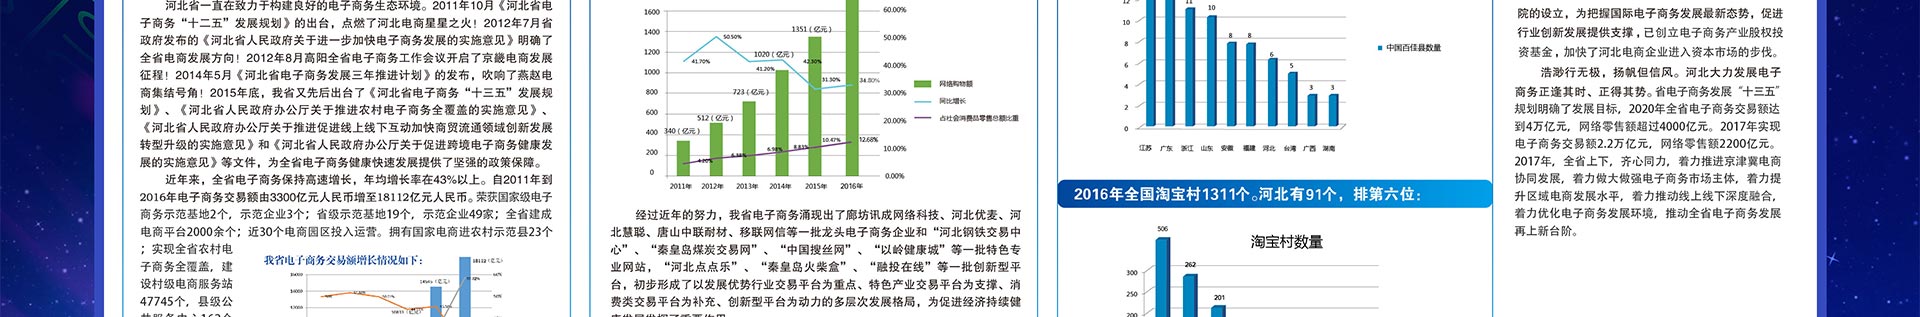 河北省电子商务示范园区、企业版图分布VR库 - jpg